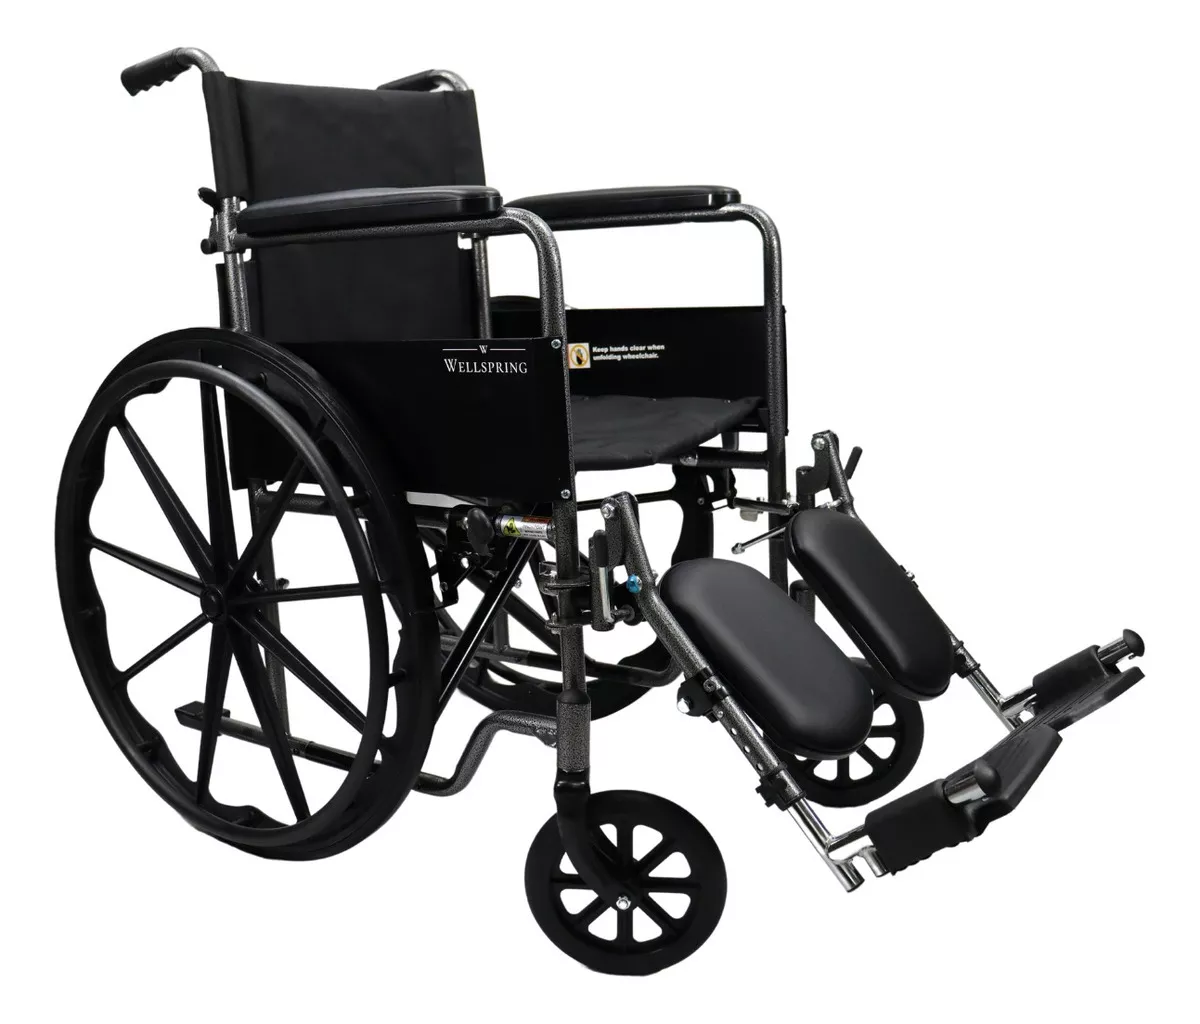 Primera imagen para búsqueda de silla ruedas